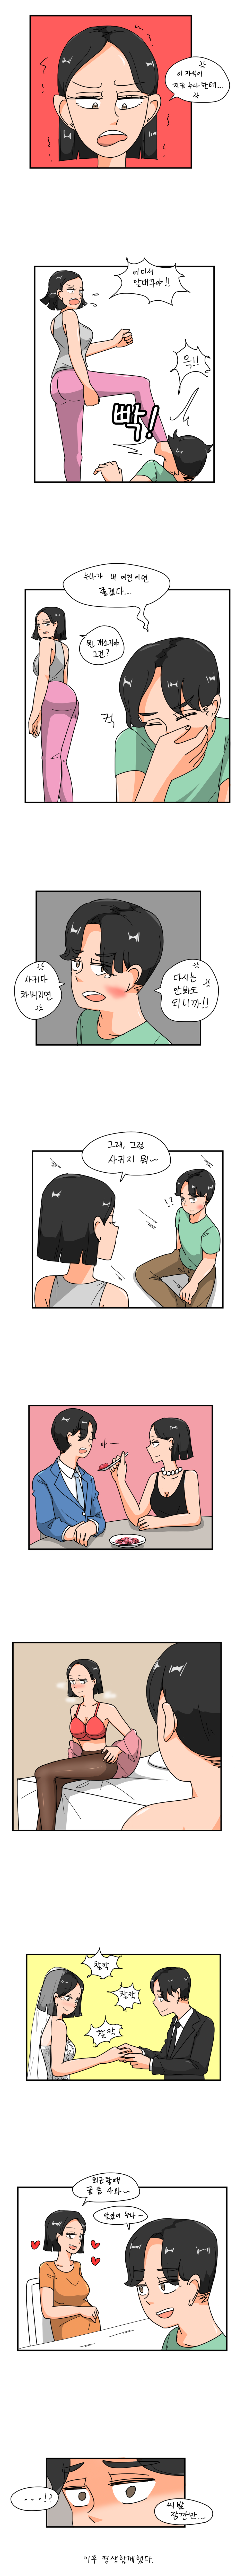 오싹오싹) 친누나랑 사귀는 만화.manga